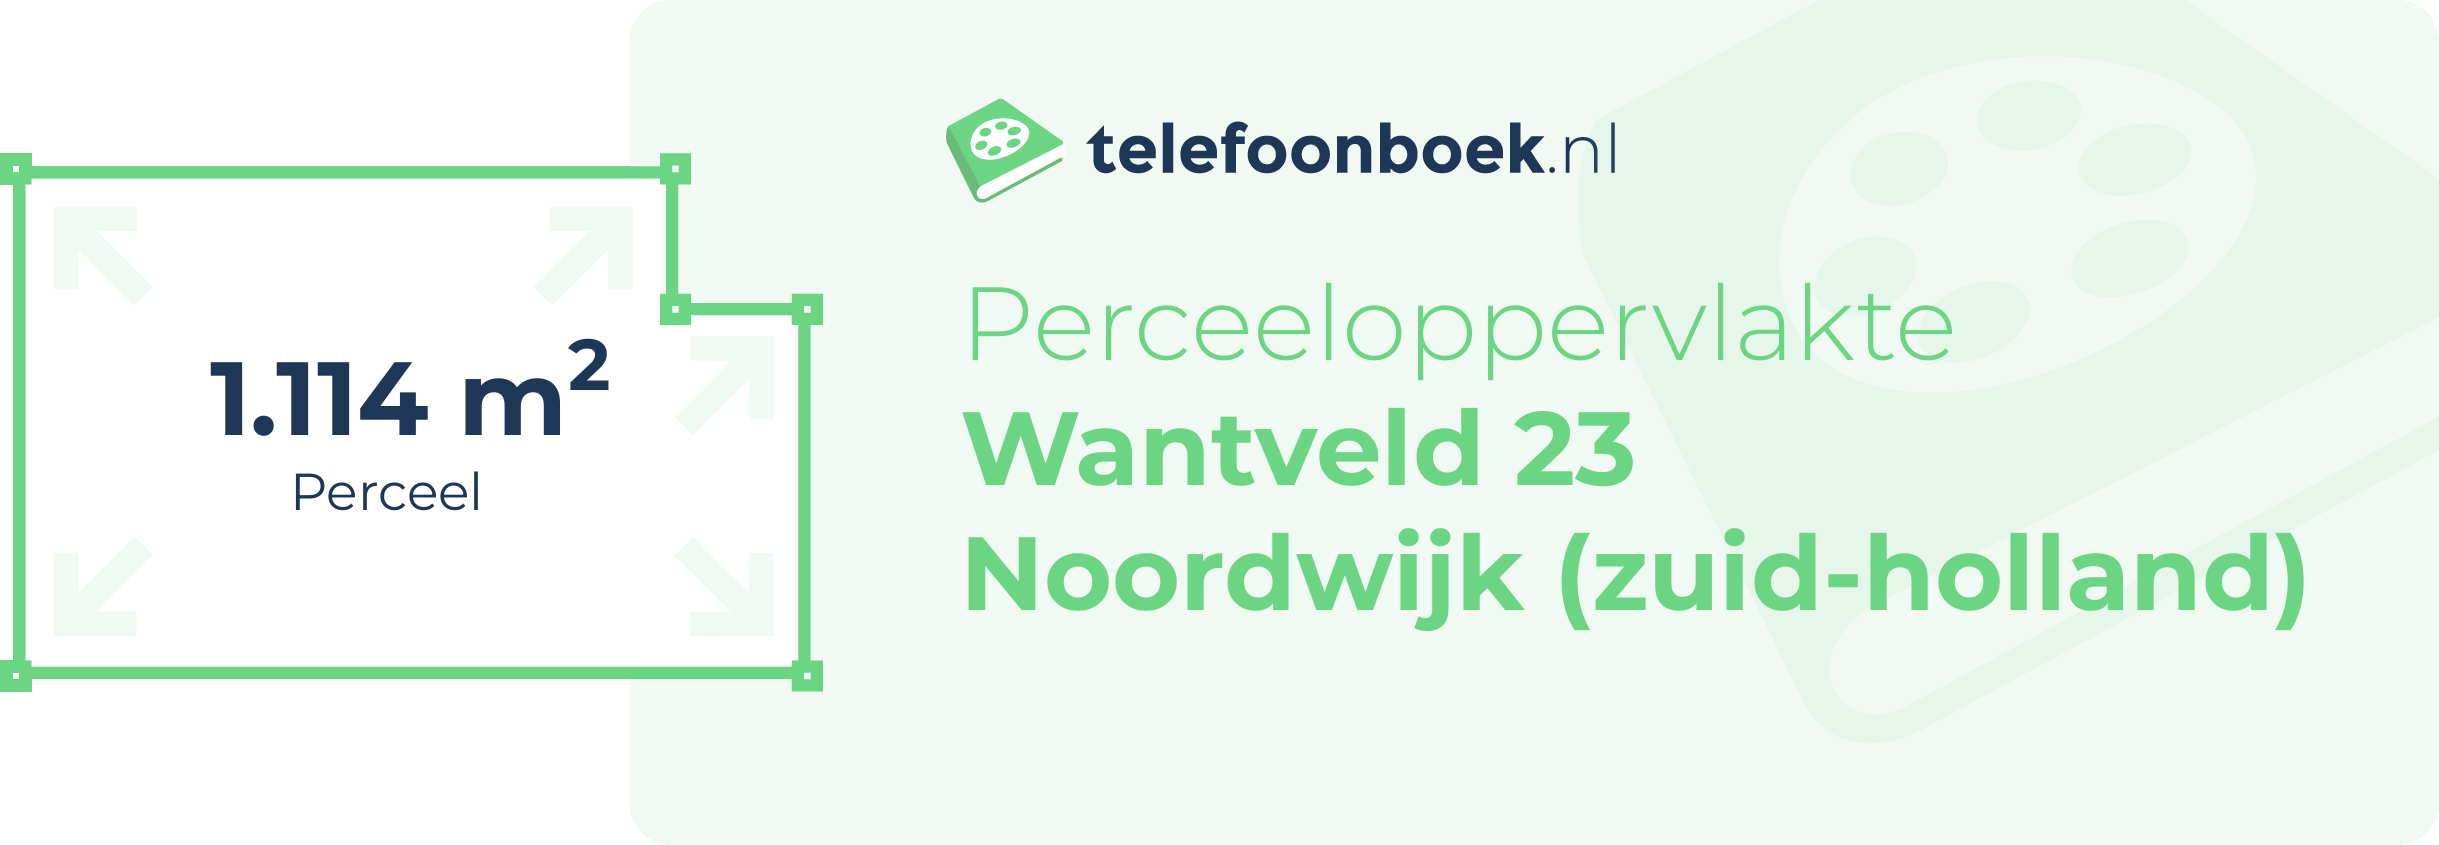 Perceeloppervlakte Wantveld 23 Noordwijk (Zuid-Holland)